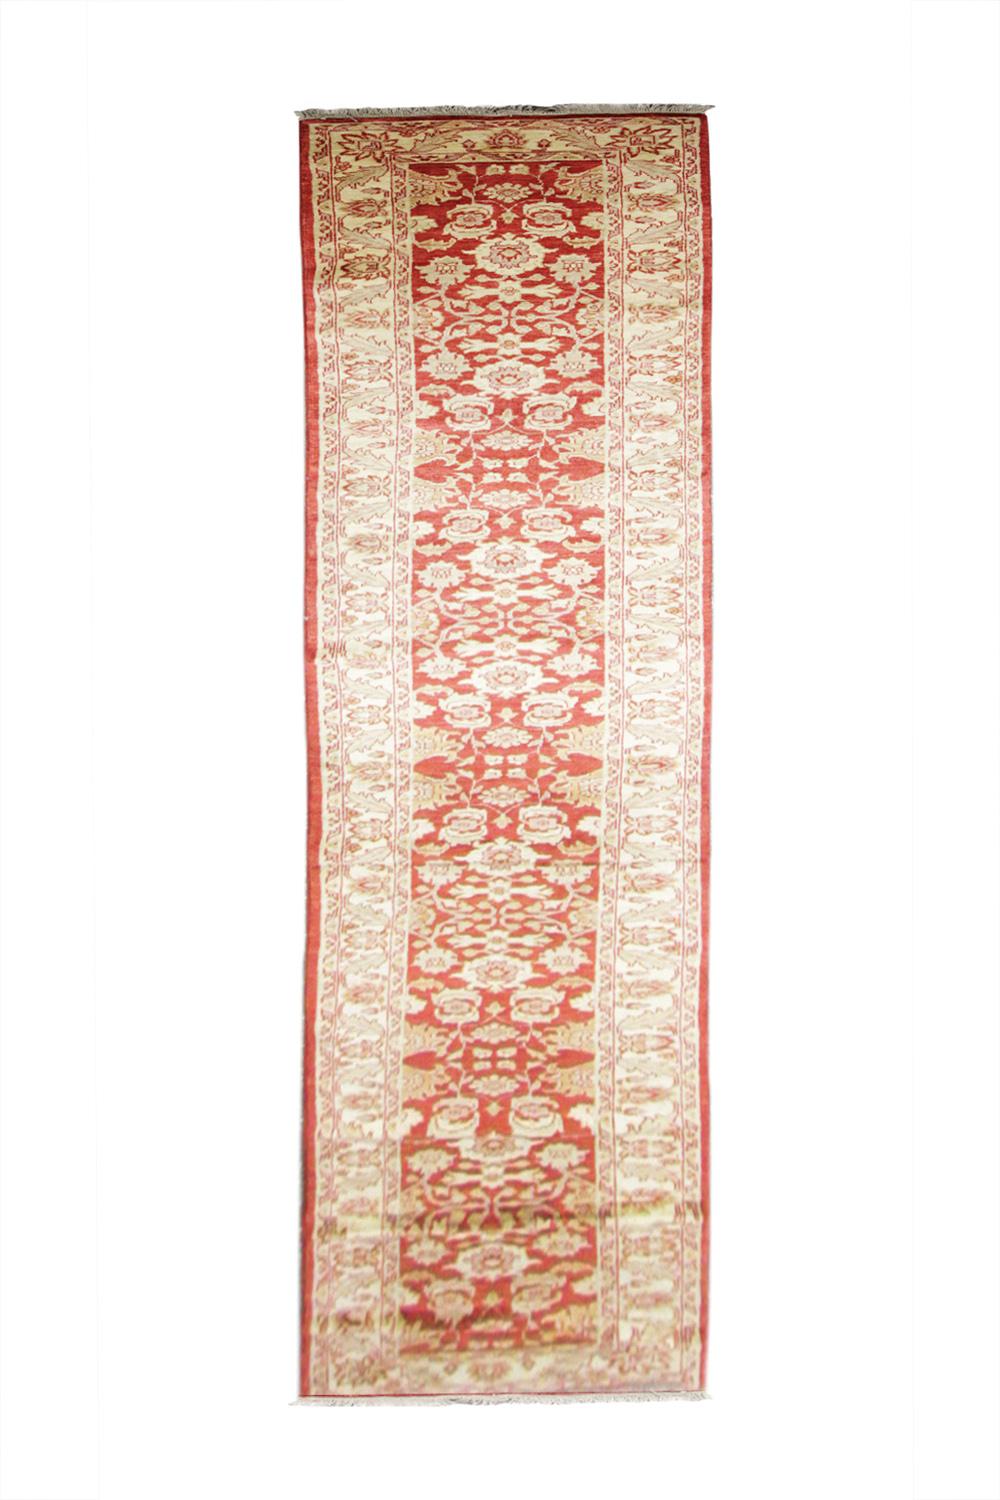 Ce tapis fait à la main est parfait pour être utilisé comme tapis de salon. La bordure en couches est magnifiquement tissée avec un motif répétitif tout au long de l'ouvrage. Le contraste entre le rouge profond et le beige est parfait pour créer ce